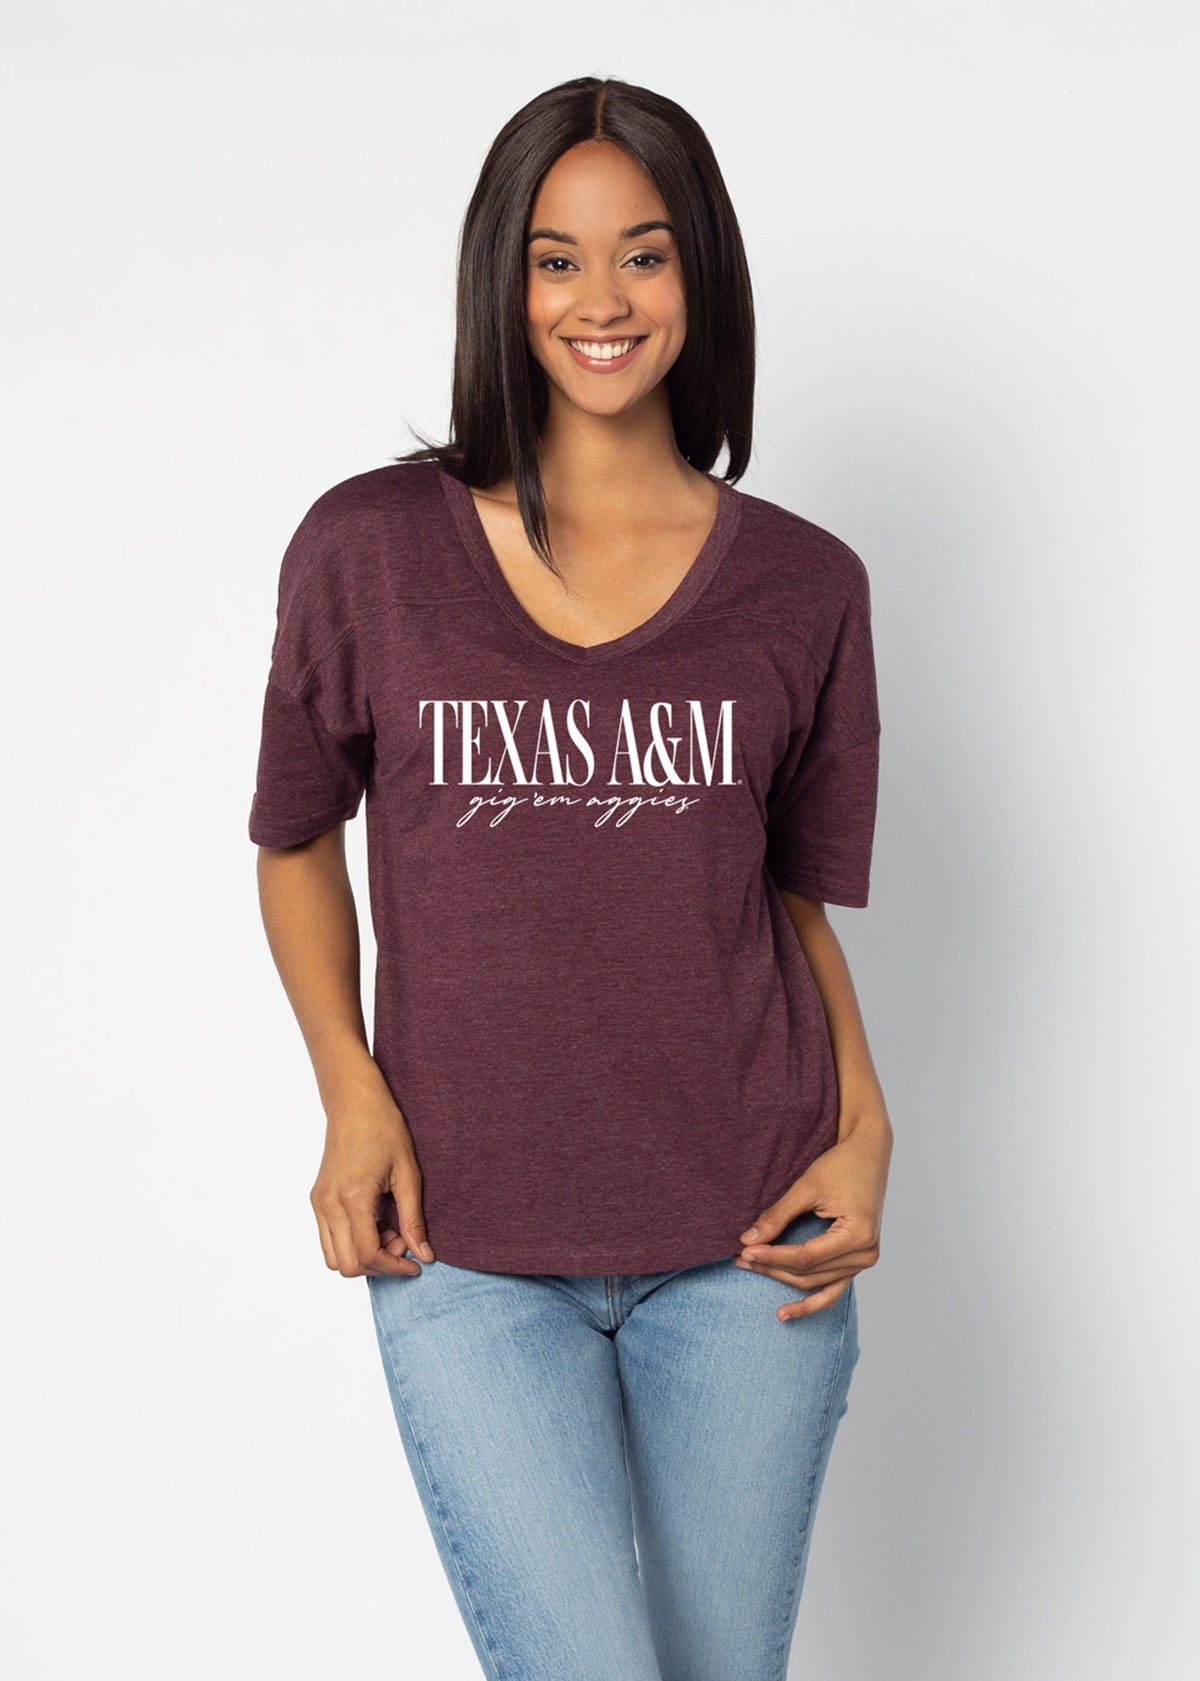 Texas A&M Aggies tshirt plus size